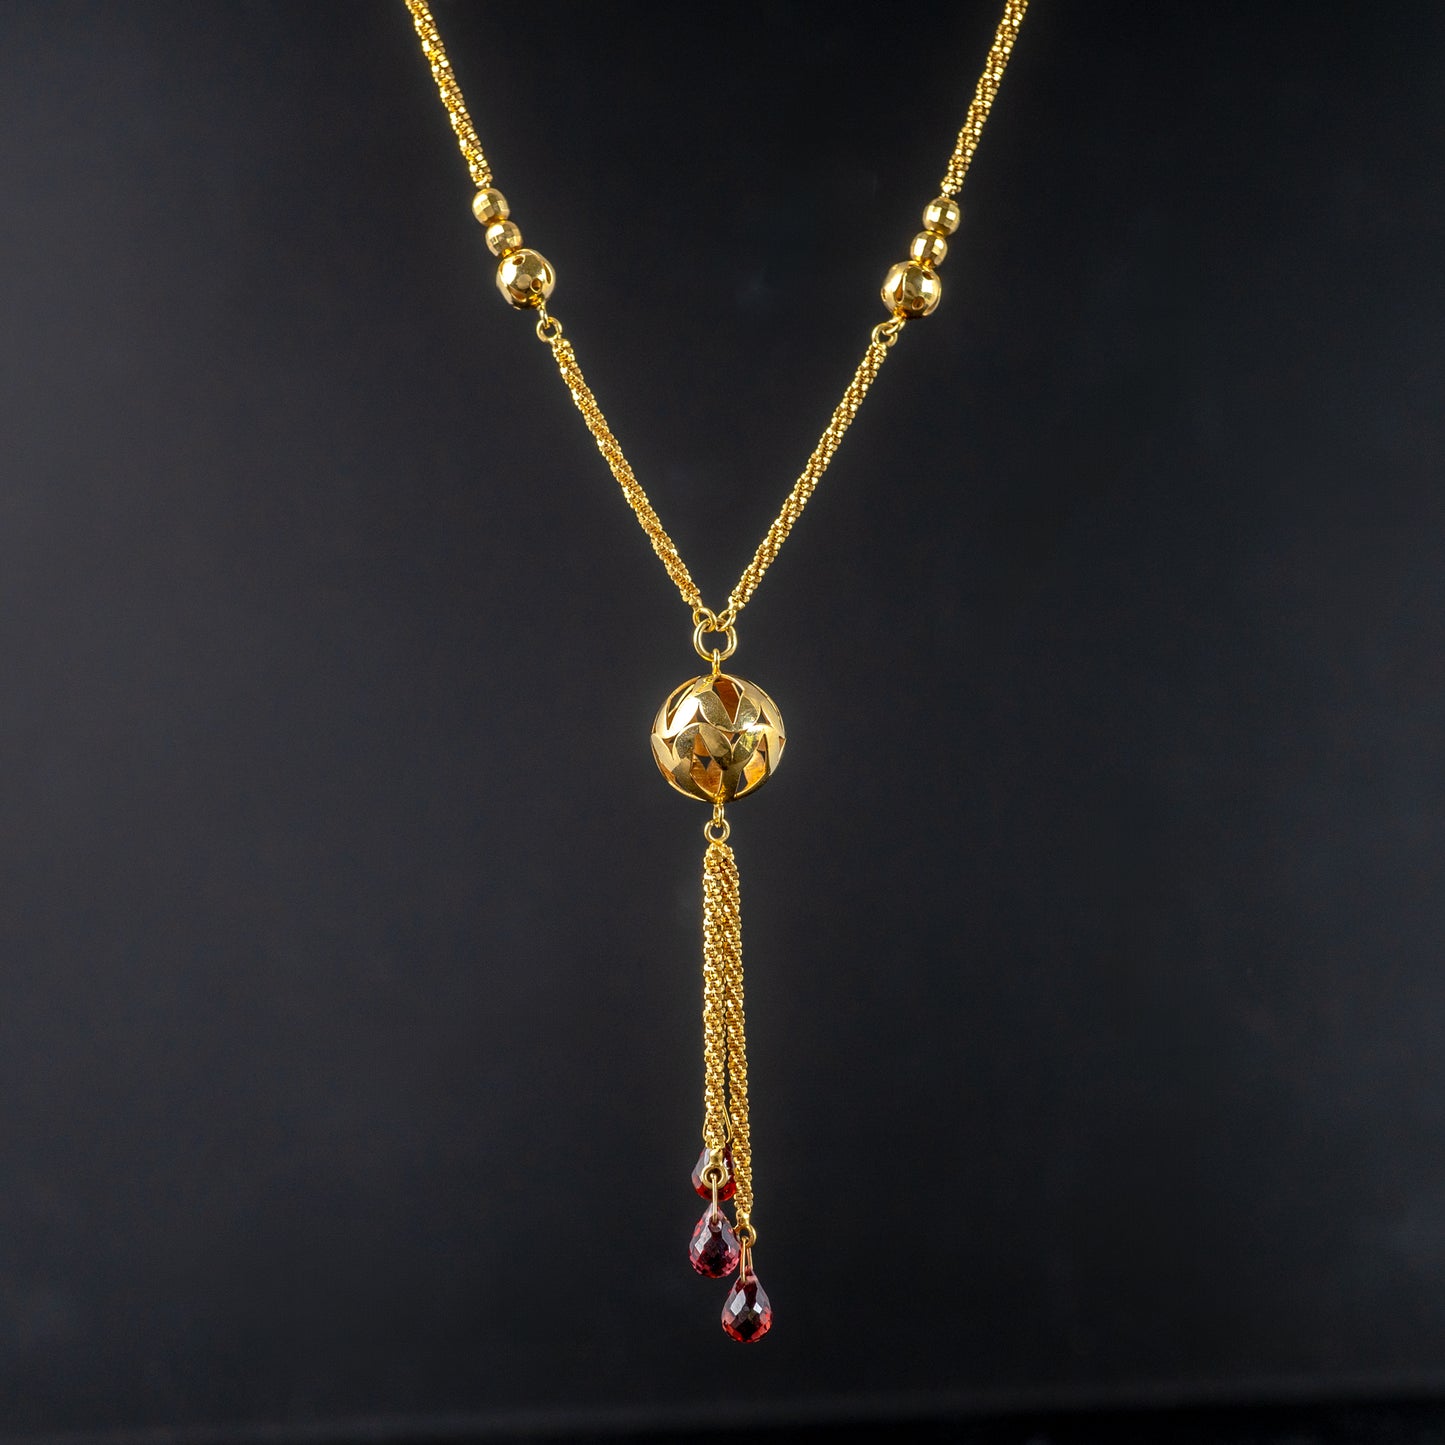 Vintage Gold Tassel Lariat Necklace with British Hallmarks